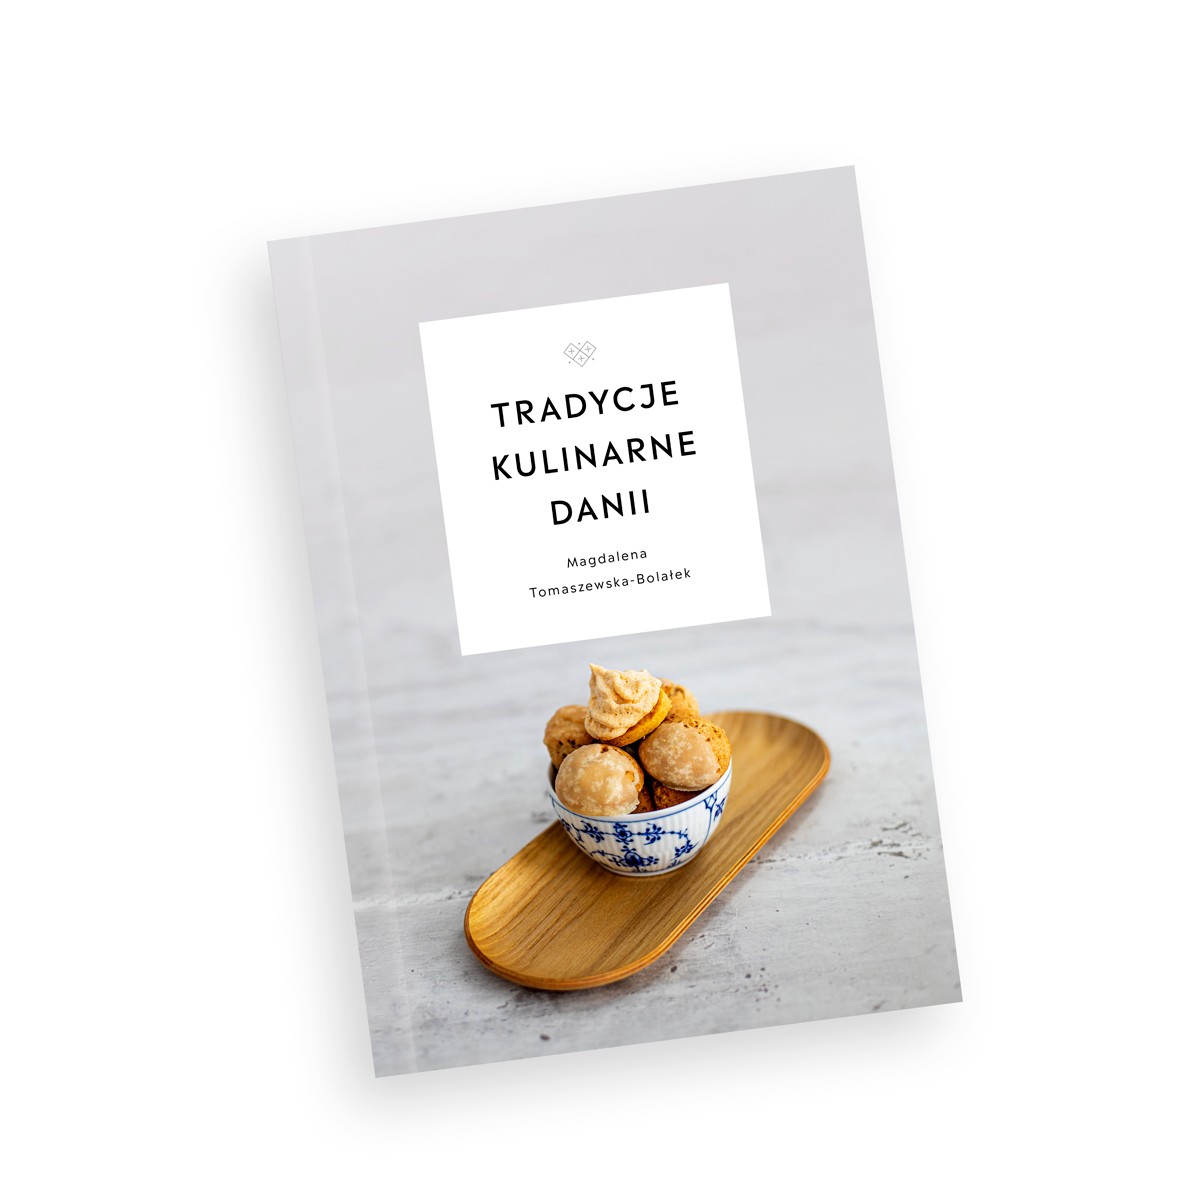 okładka książki, zdjęcie babeczek, Napis "tradycje kulinarne Danii"